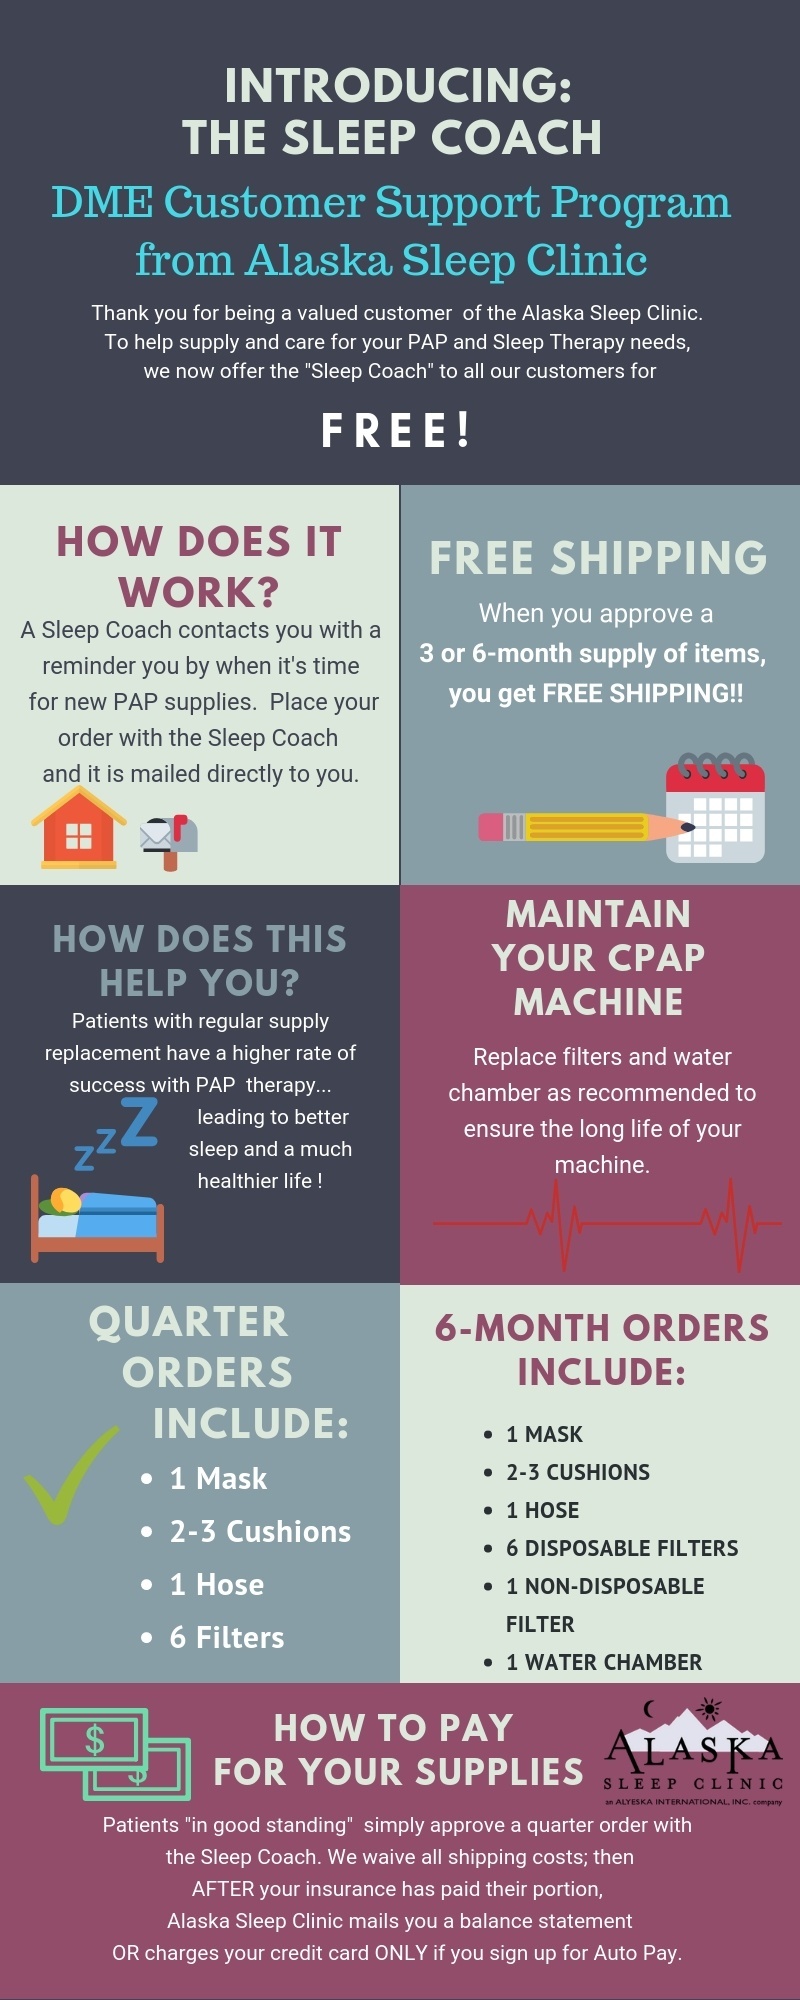 What Is the Goal AHI for CPAP Treatment of Sleep Apnea? – Alaska Sleep ...